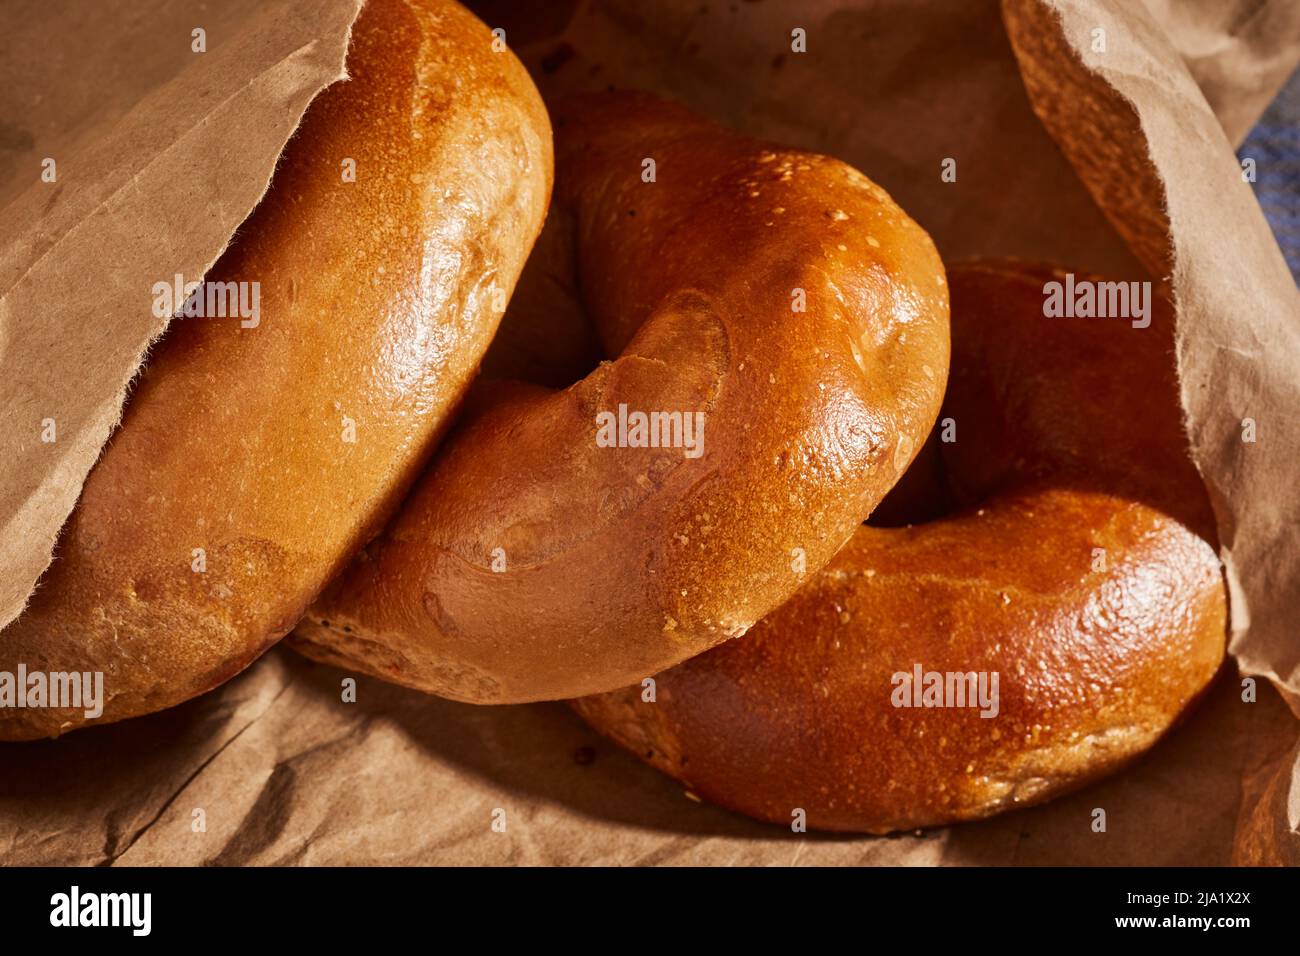 Bagels, le pain classique de l'Europe de l'est juive Banque D'Images